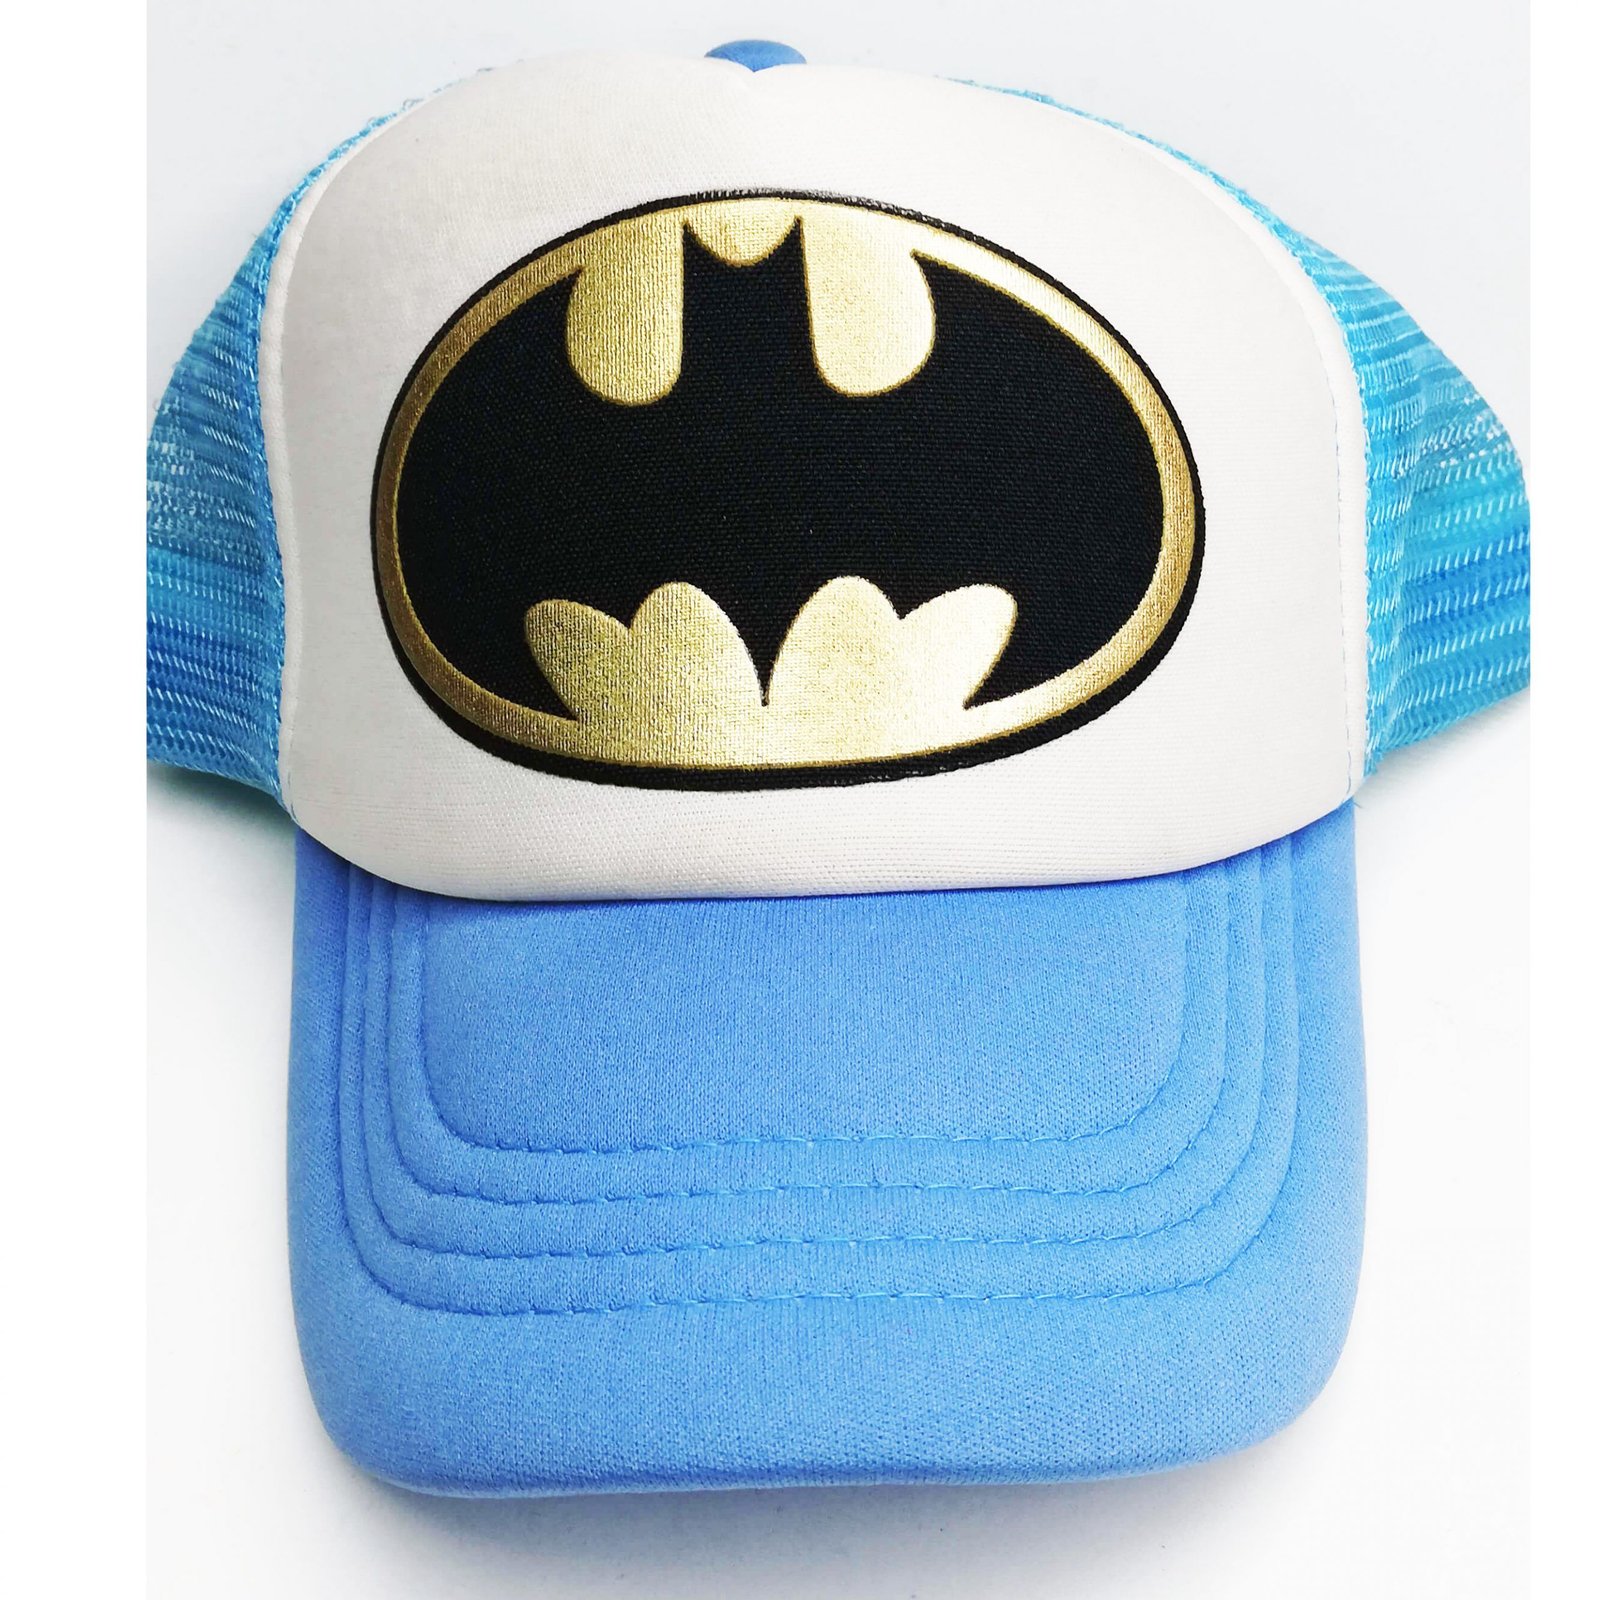 gorra Batman comic ropa Batman Bat man Geek tienda friki